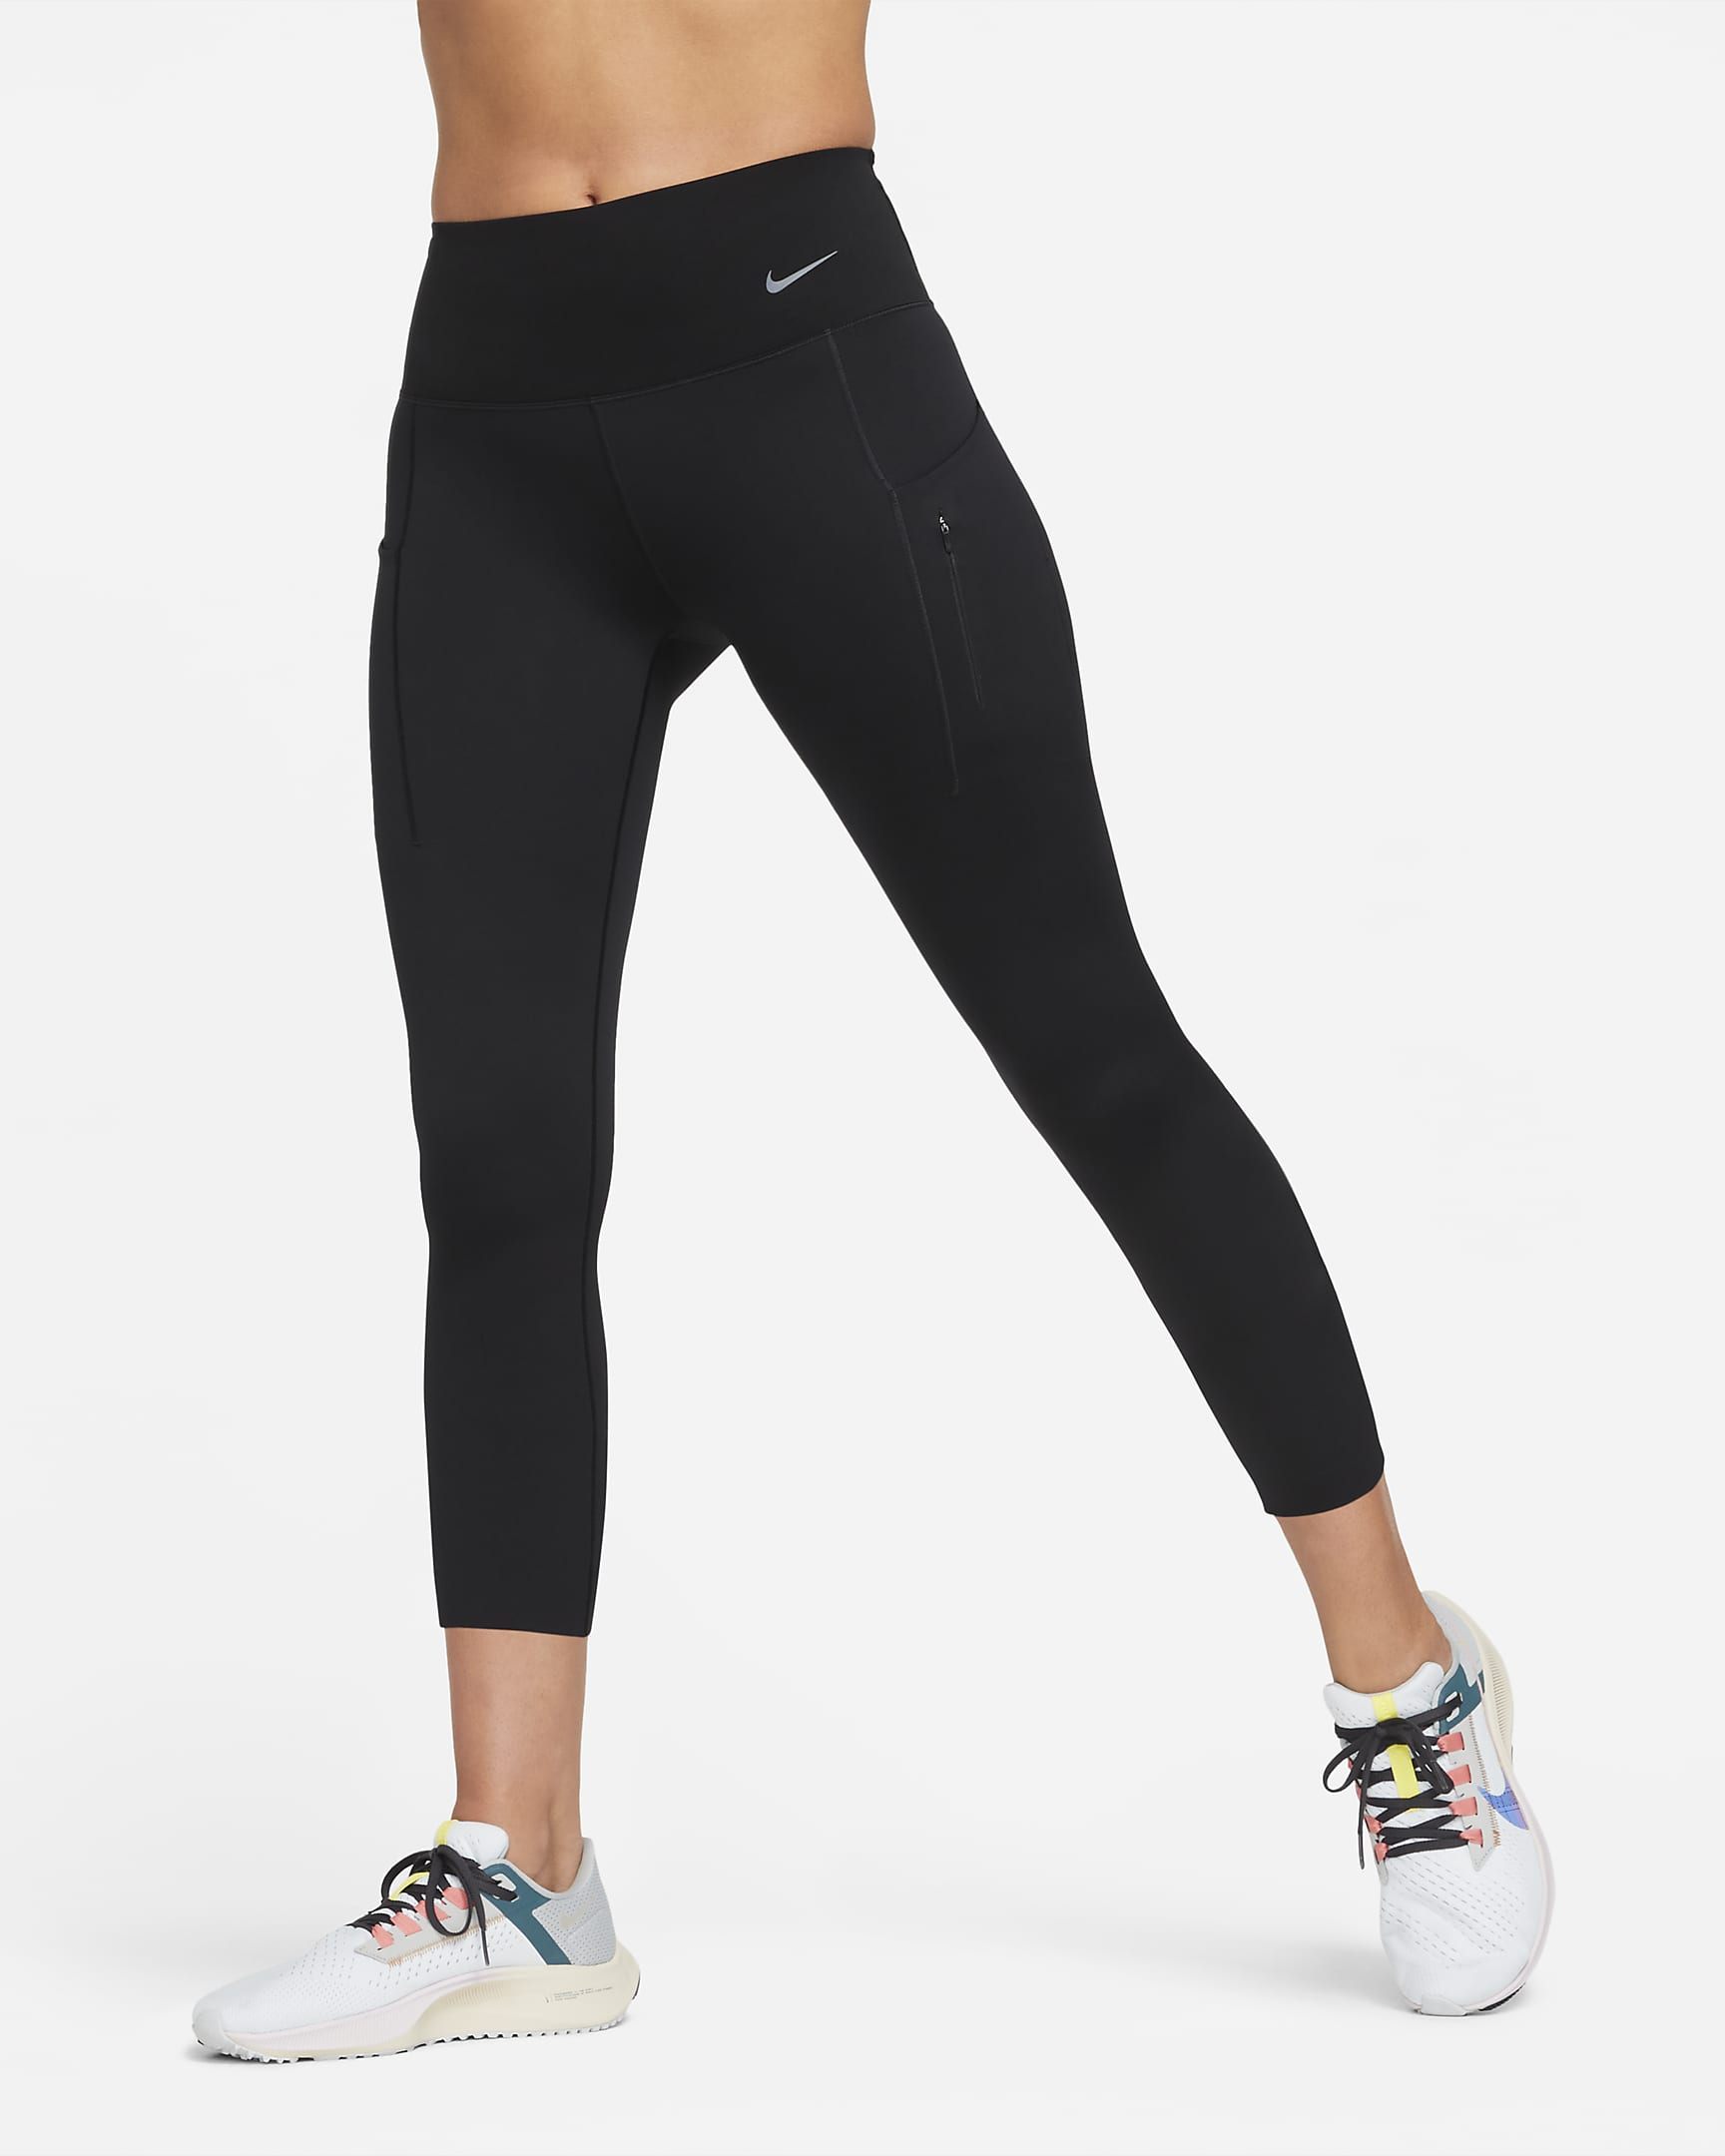 Legging court taille mi-haute à maintien supérieur avec poches Nike Go pour femme - Noir/Noir